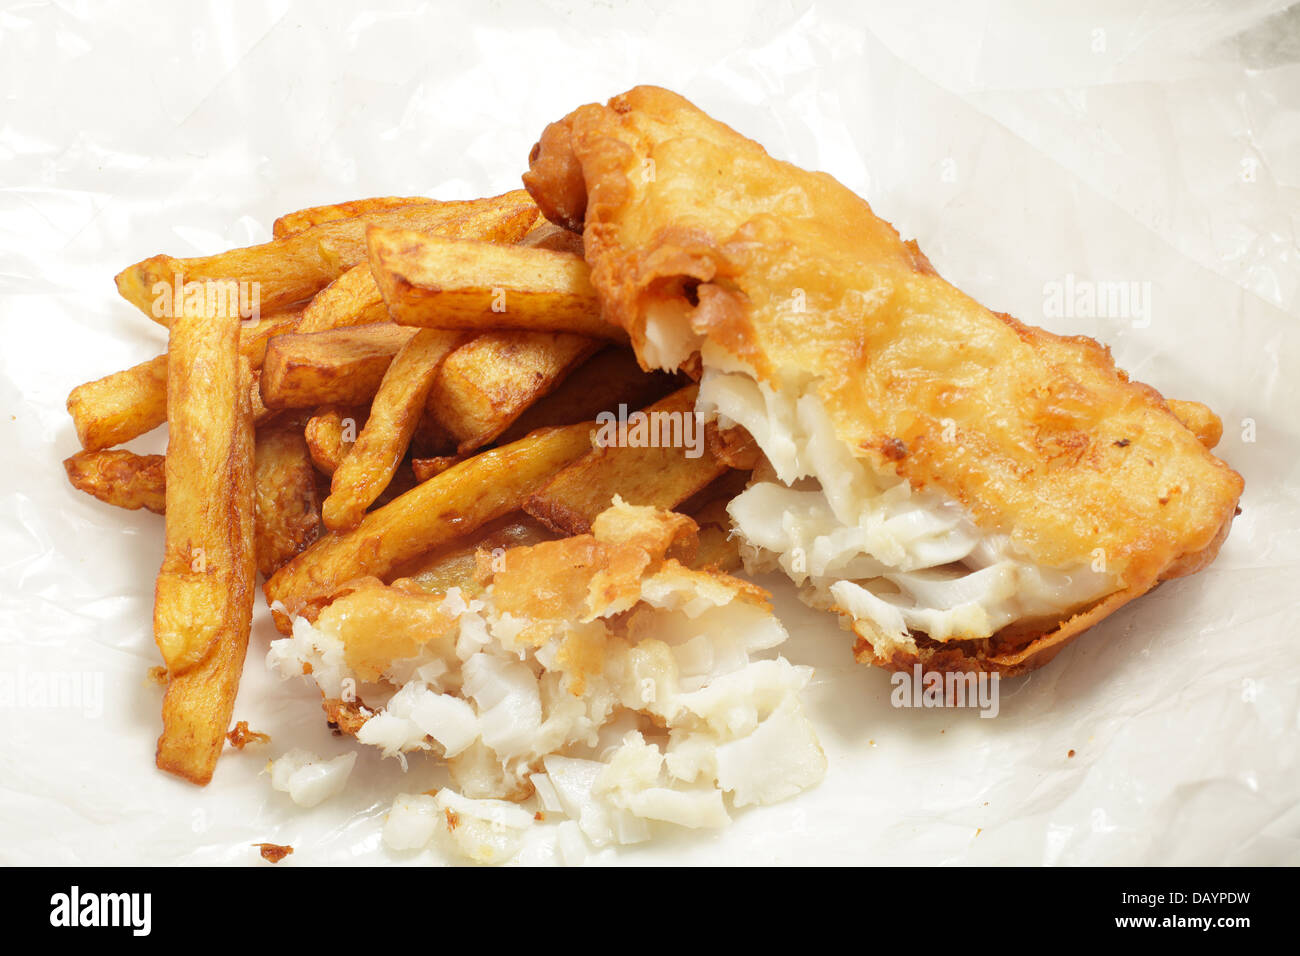 La 'chip shop' style morue frite en pâte avec chips (frites) dans un  emballage de papier sulfurisé Photo Stock - Alamy